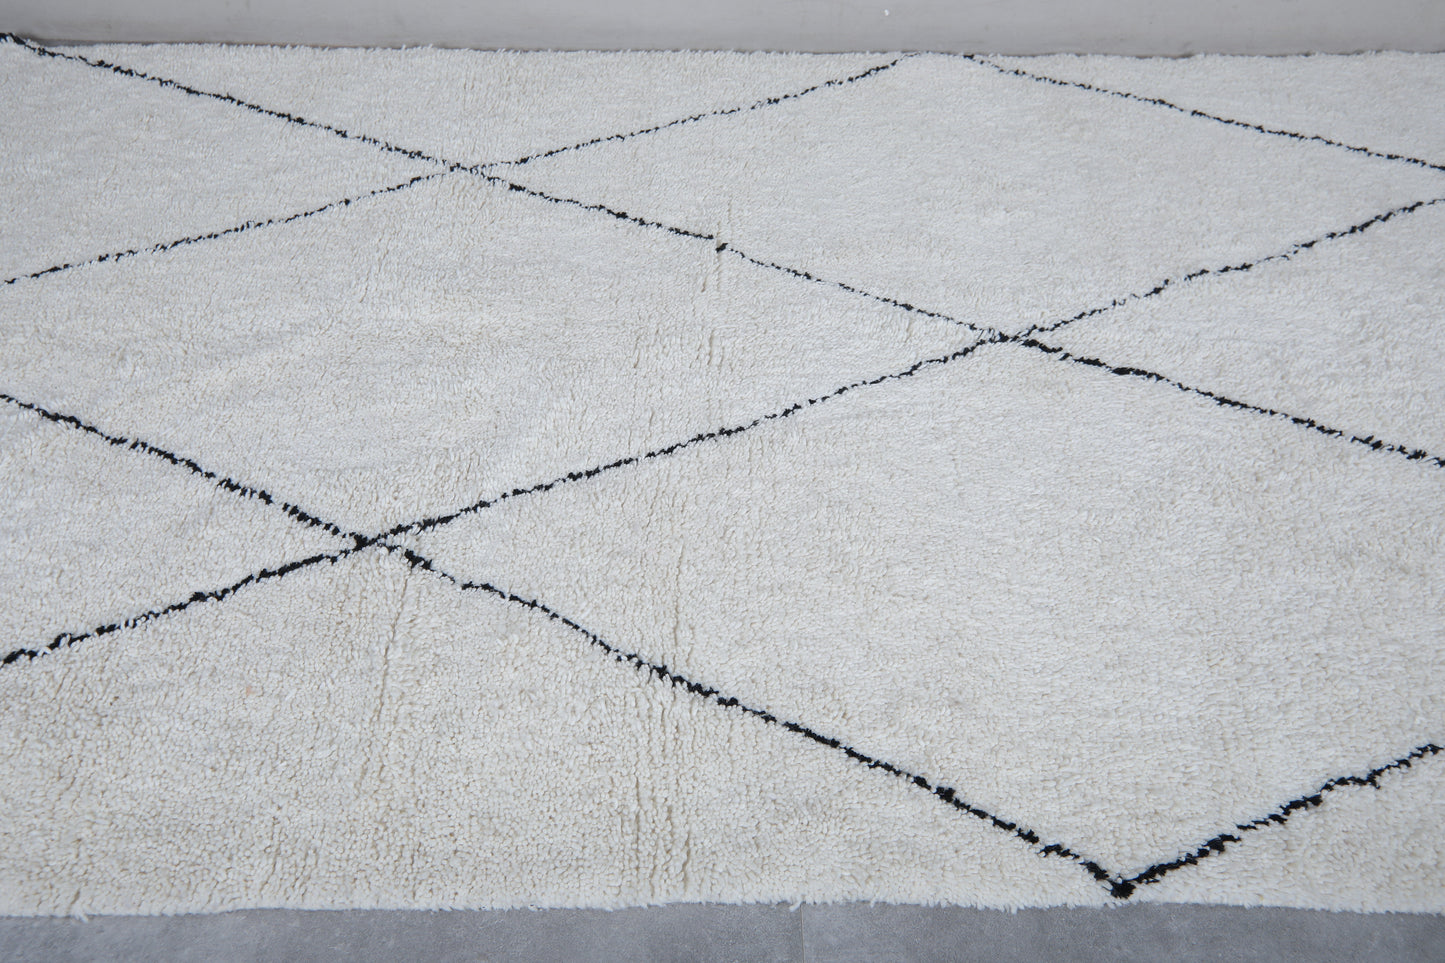 Moroccan rug 6.1 X 10.1 Feet